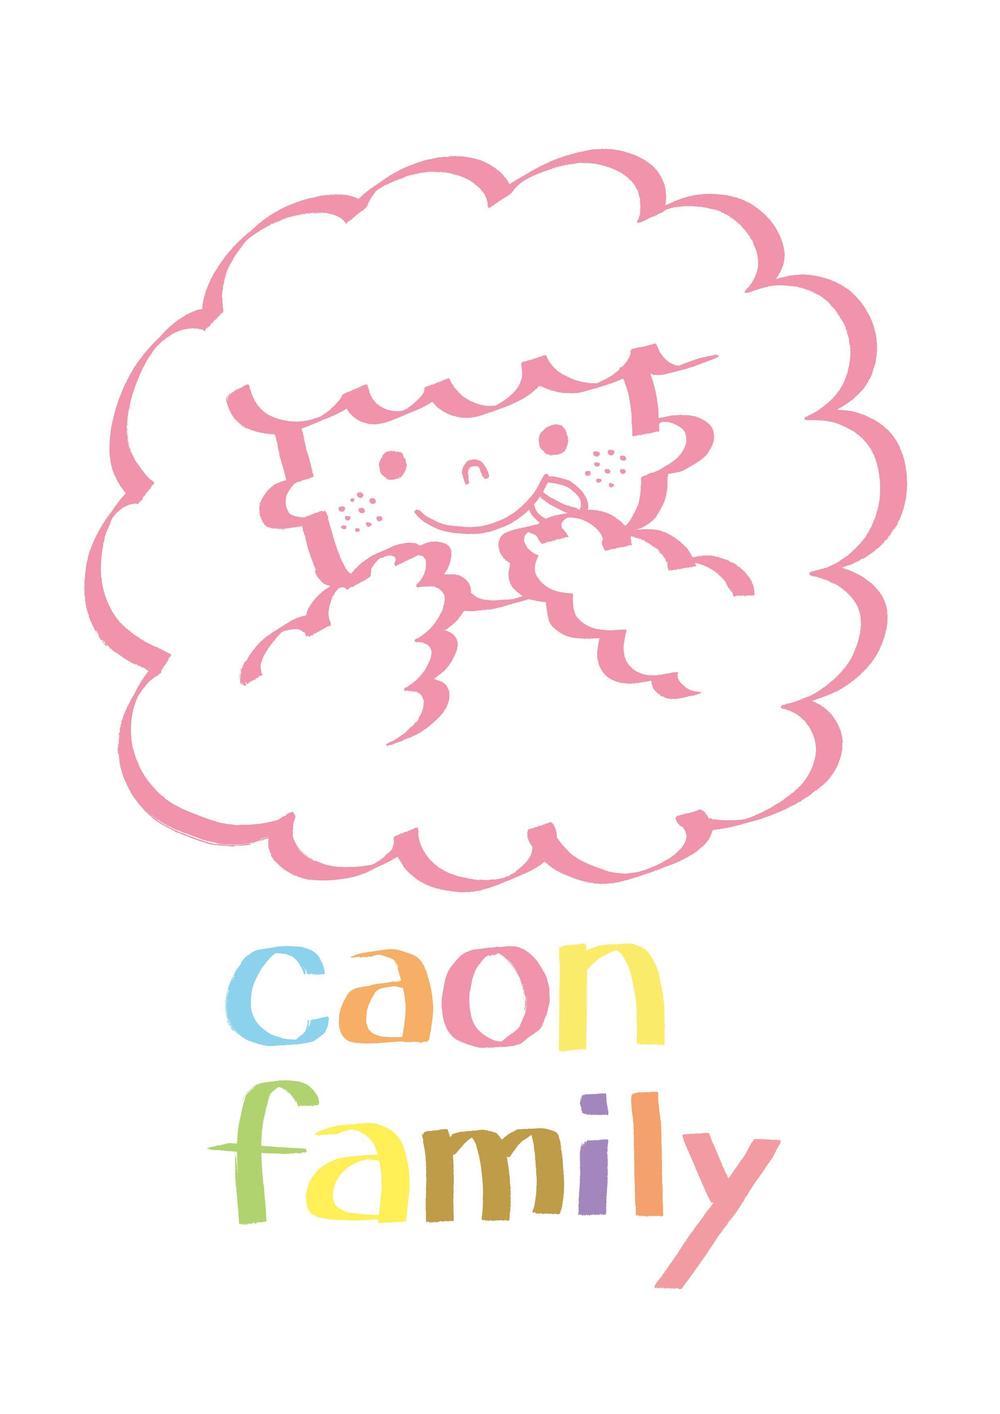 caon_family.jpg